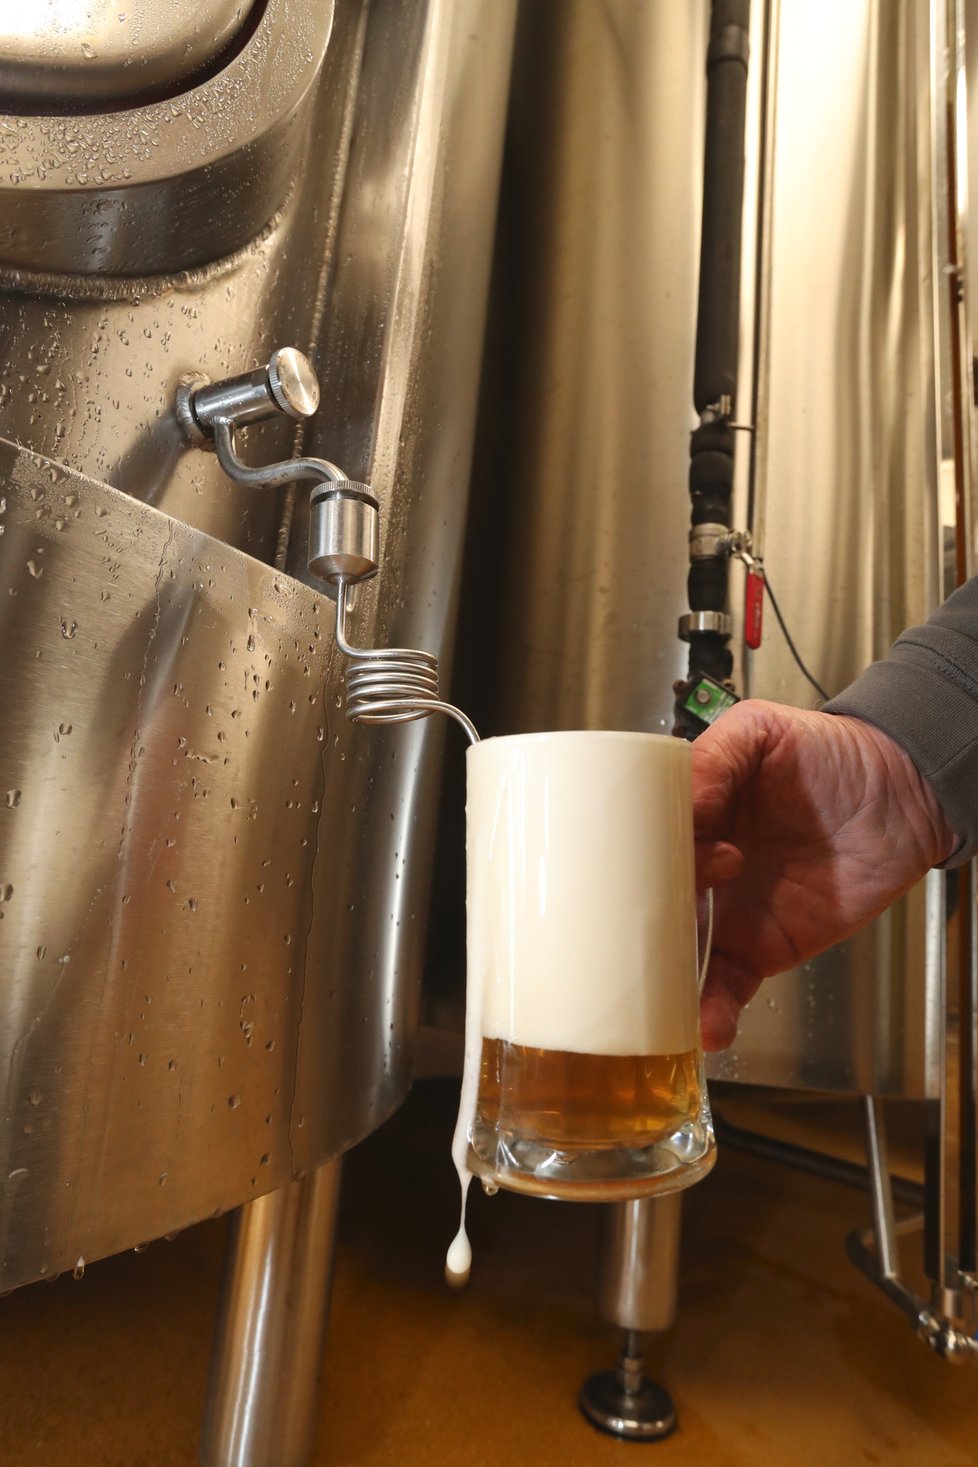 Piva z Pivovaru Uhříněves jsou k sehnání pod názvem Alois. Odkazují tak na jméno dlouholetého majitele pivovaru Aloise Tichého, který z něj na konci republiky učinil jeden z nejvěhlasnějších pivovarů na našem území.